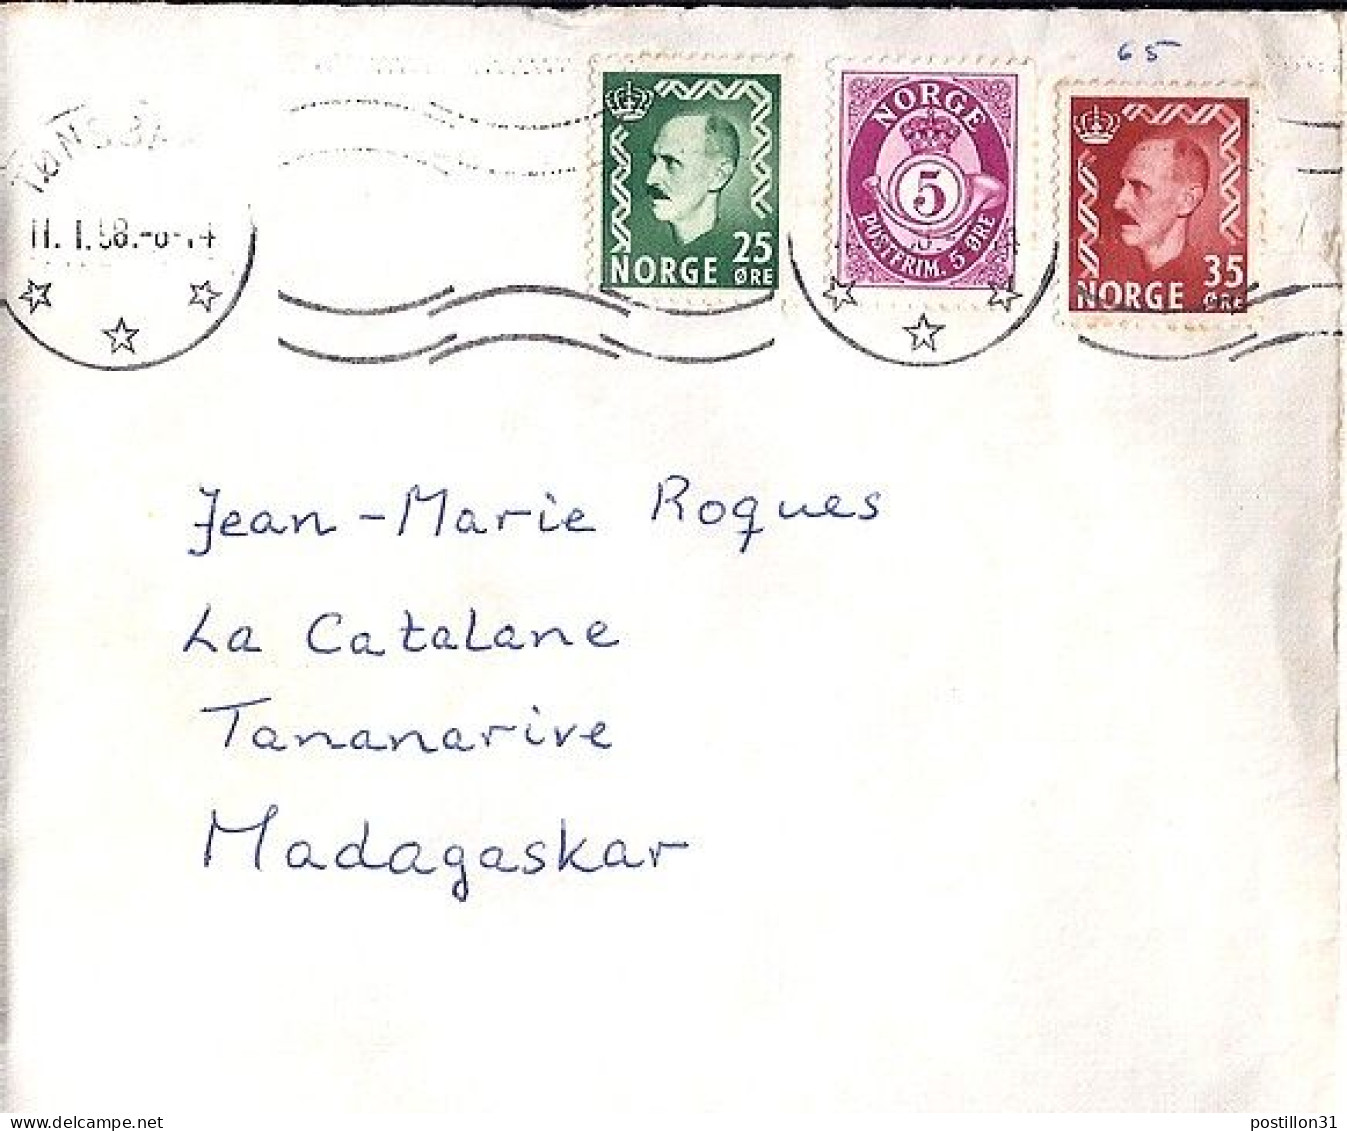 NORVEGE N° 361/362/171 S/L DU 11.1.58 POUR MADAGASCAR - Lettres & Documents